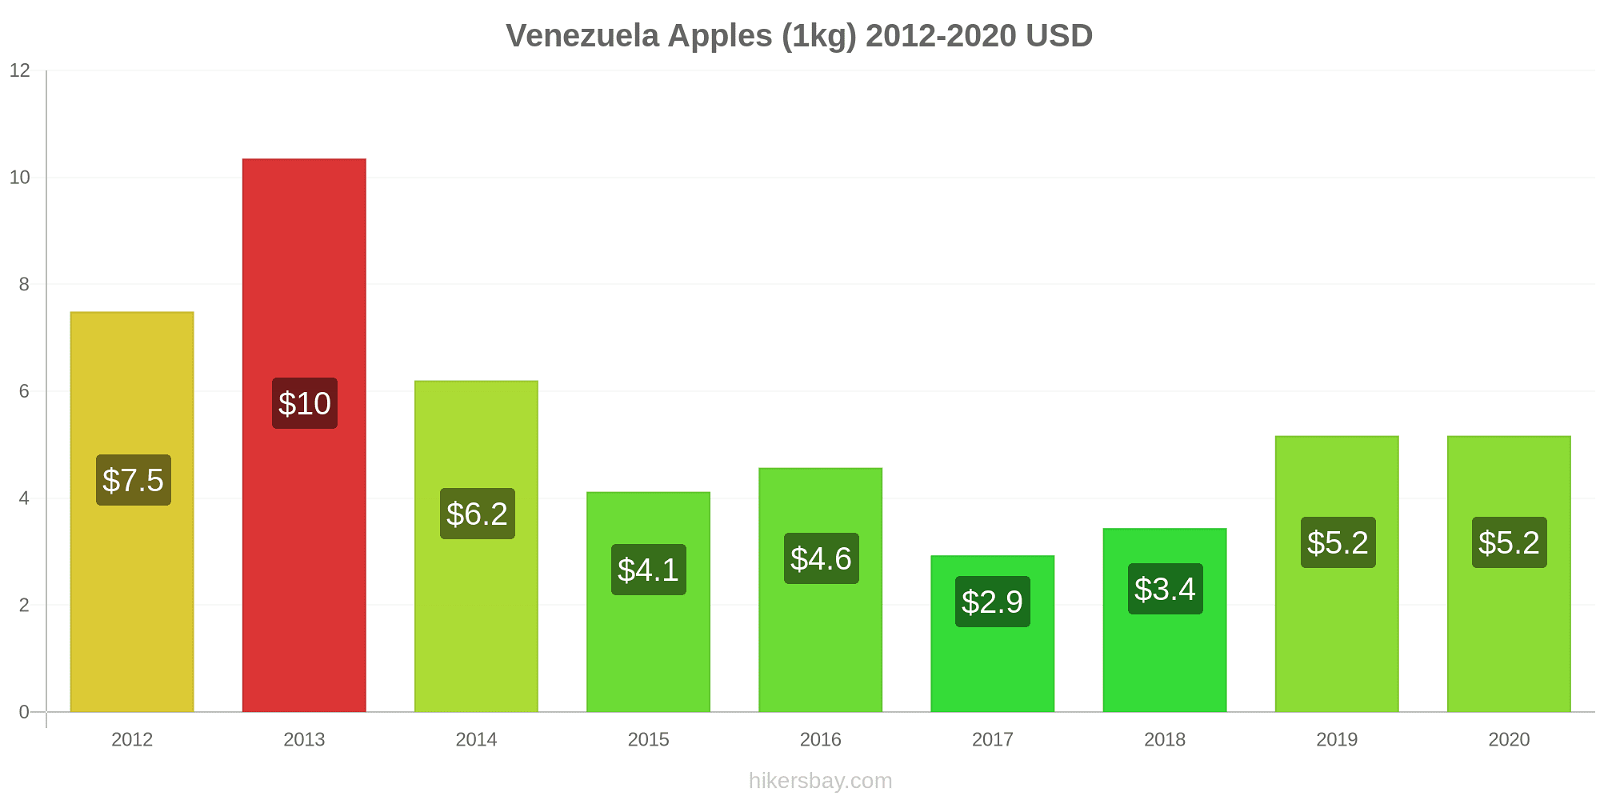 Venezuela price changes Apples (1kg) hikersbay.com